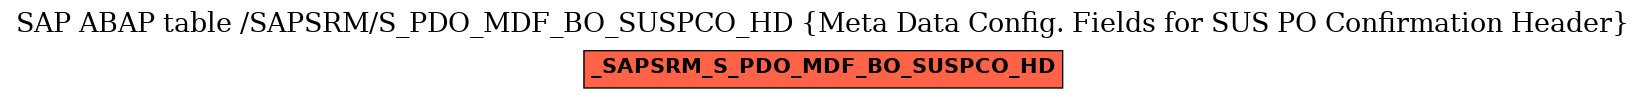 E-R Diagram for table /SAPSRM/S_PDO_MDF_BO_SUSPCO_HD (Meta Data Config. Fields for SUS PO Confirmation Header)